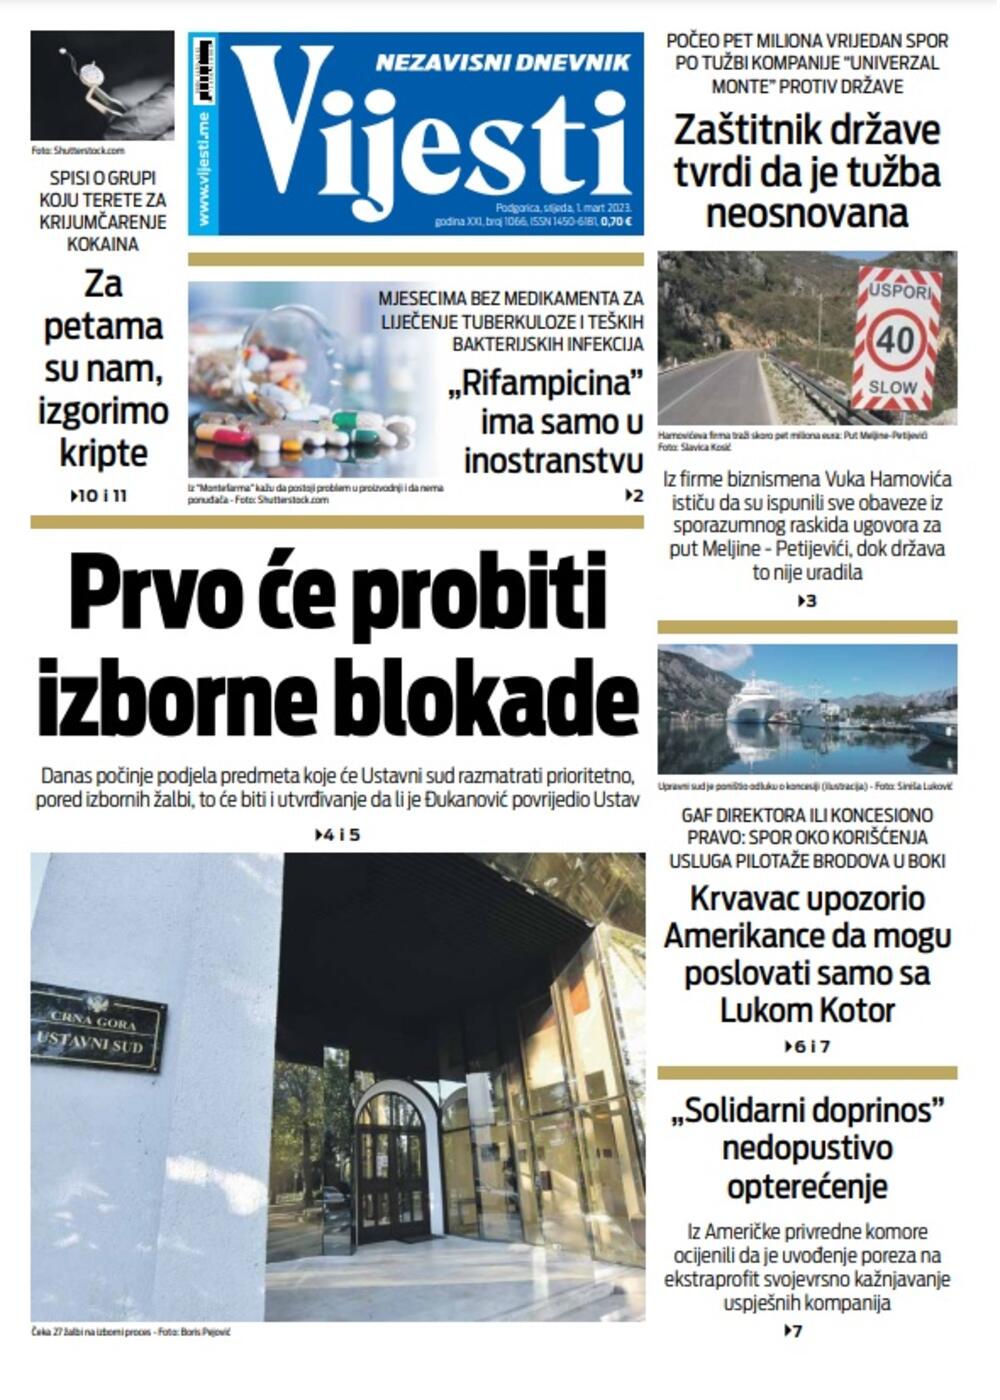 Naslovna strana "Vijesti" za 1. mart 2023. godine, Foto: Vijesti